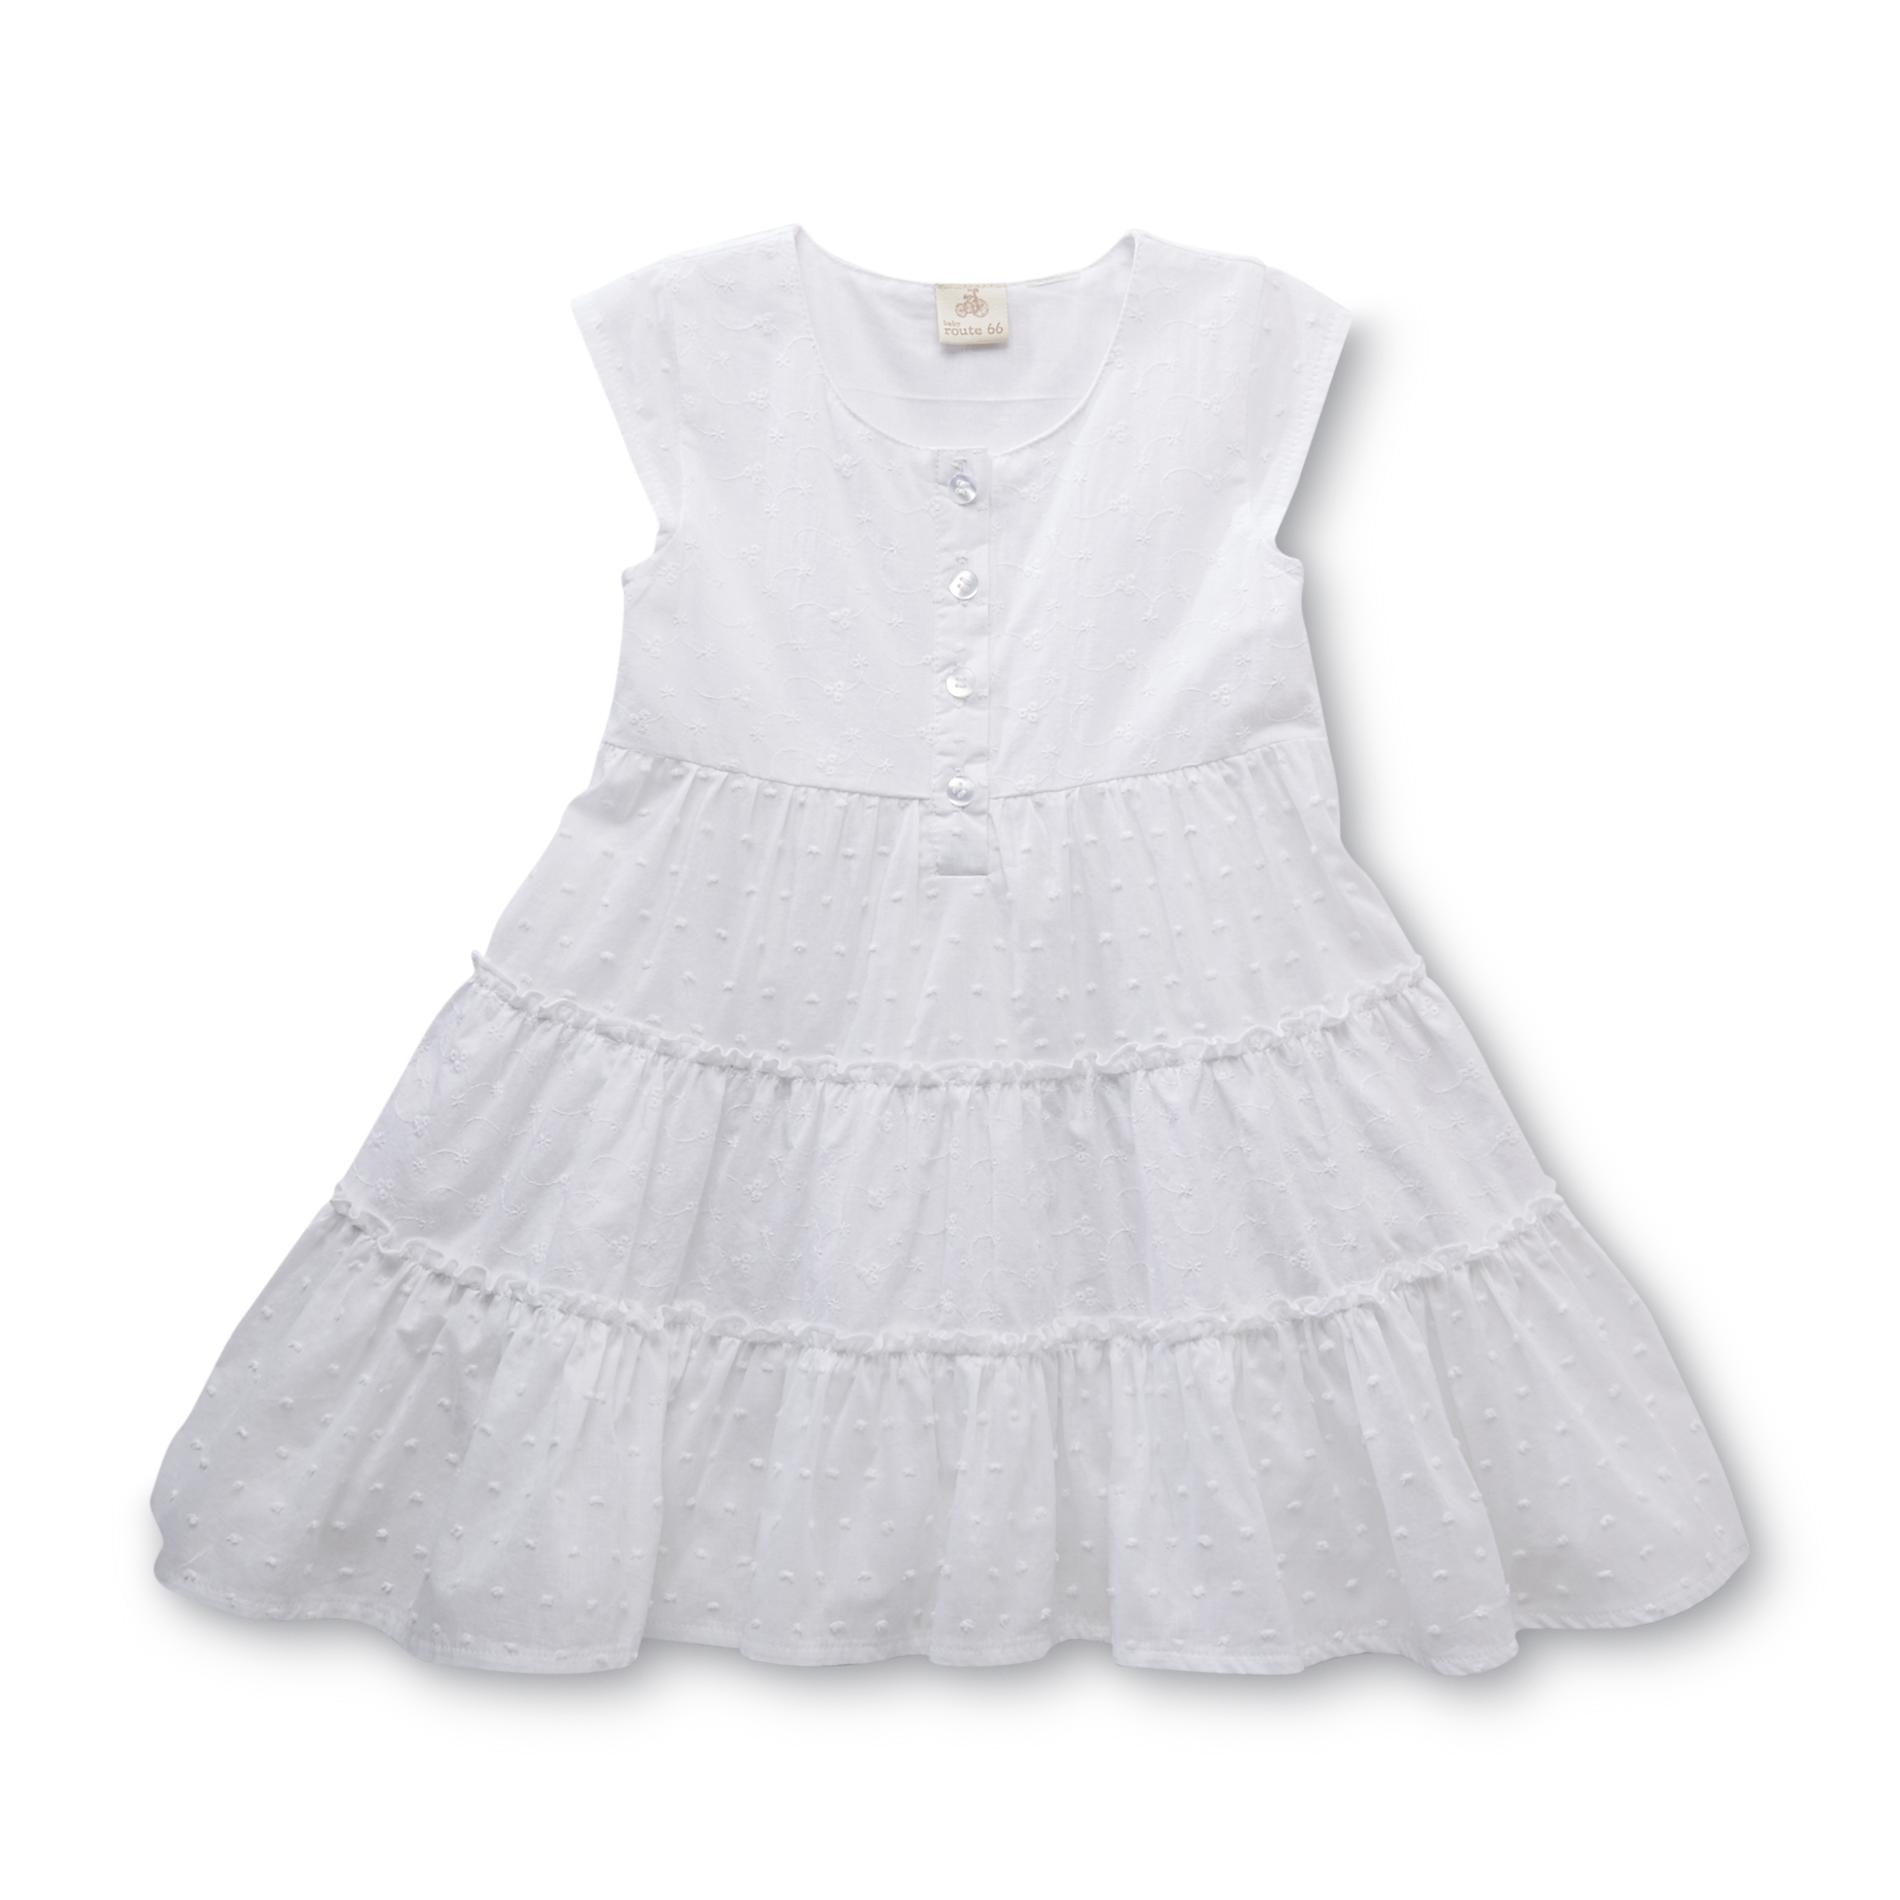 Route 66 Infant & Toddler Girl's Cap Sleeve Dress